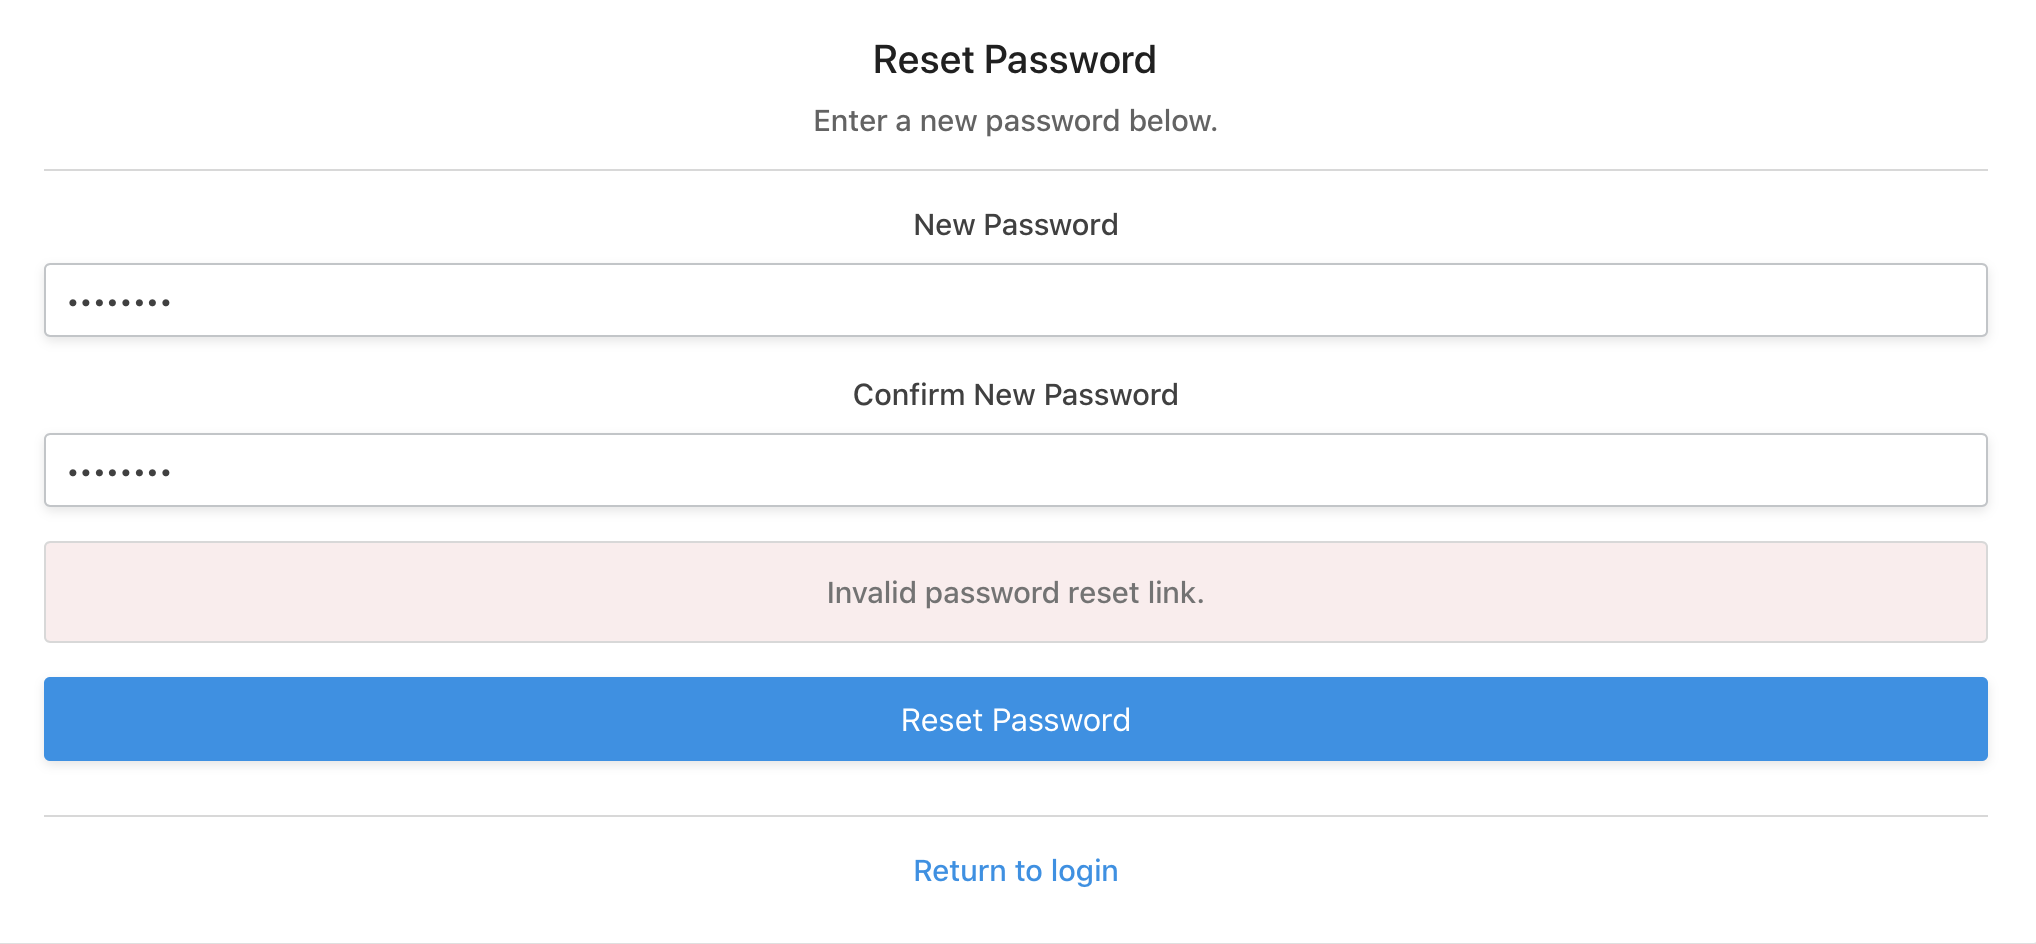 Errors password invalid. Enter New password перевод на русский.